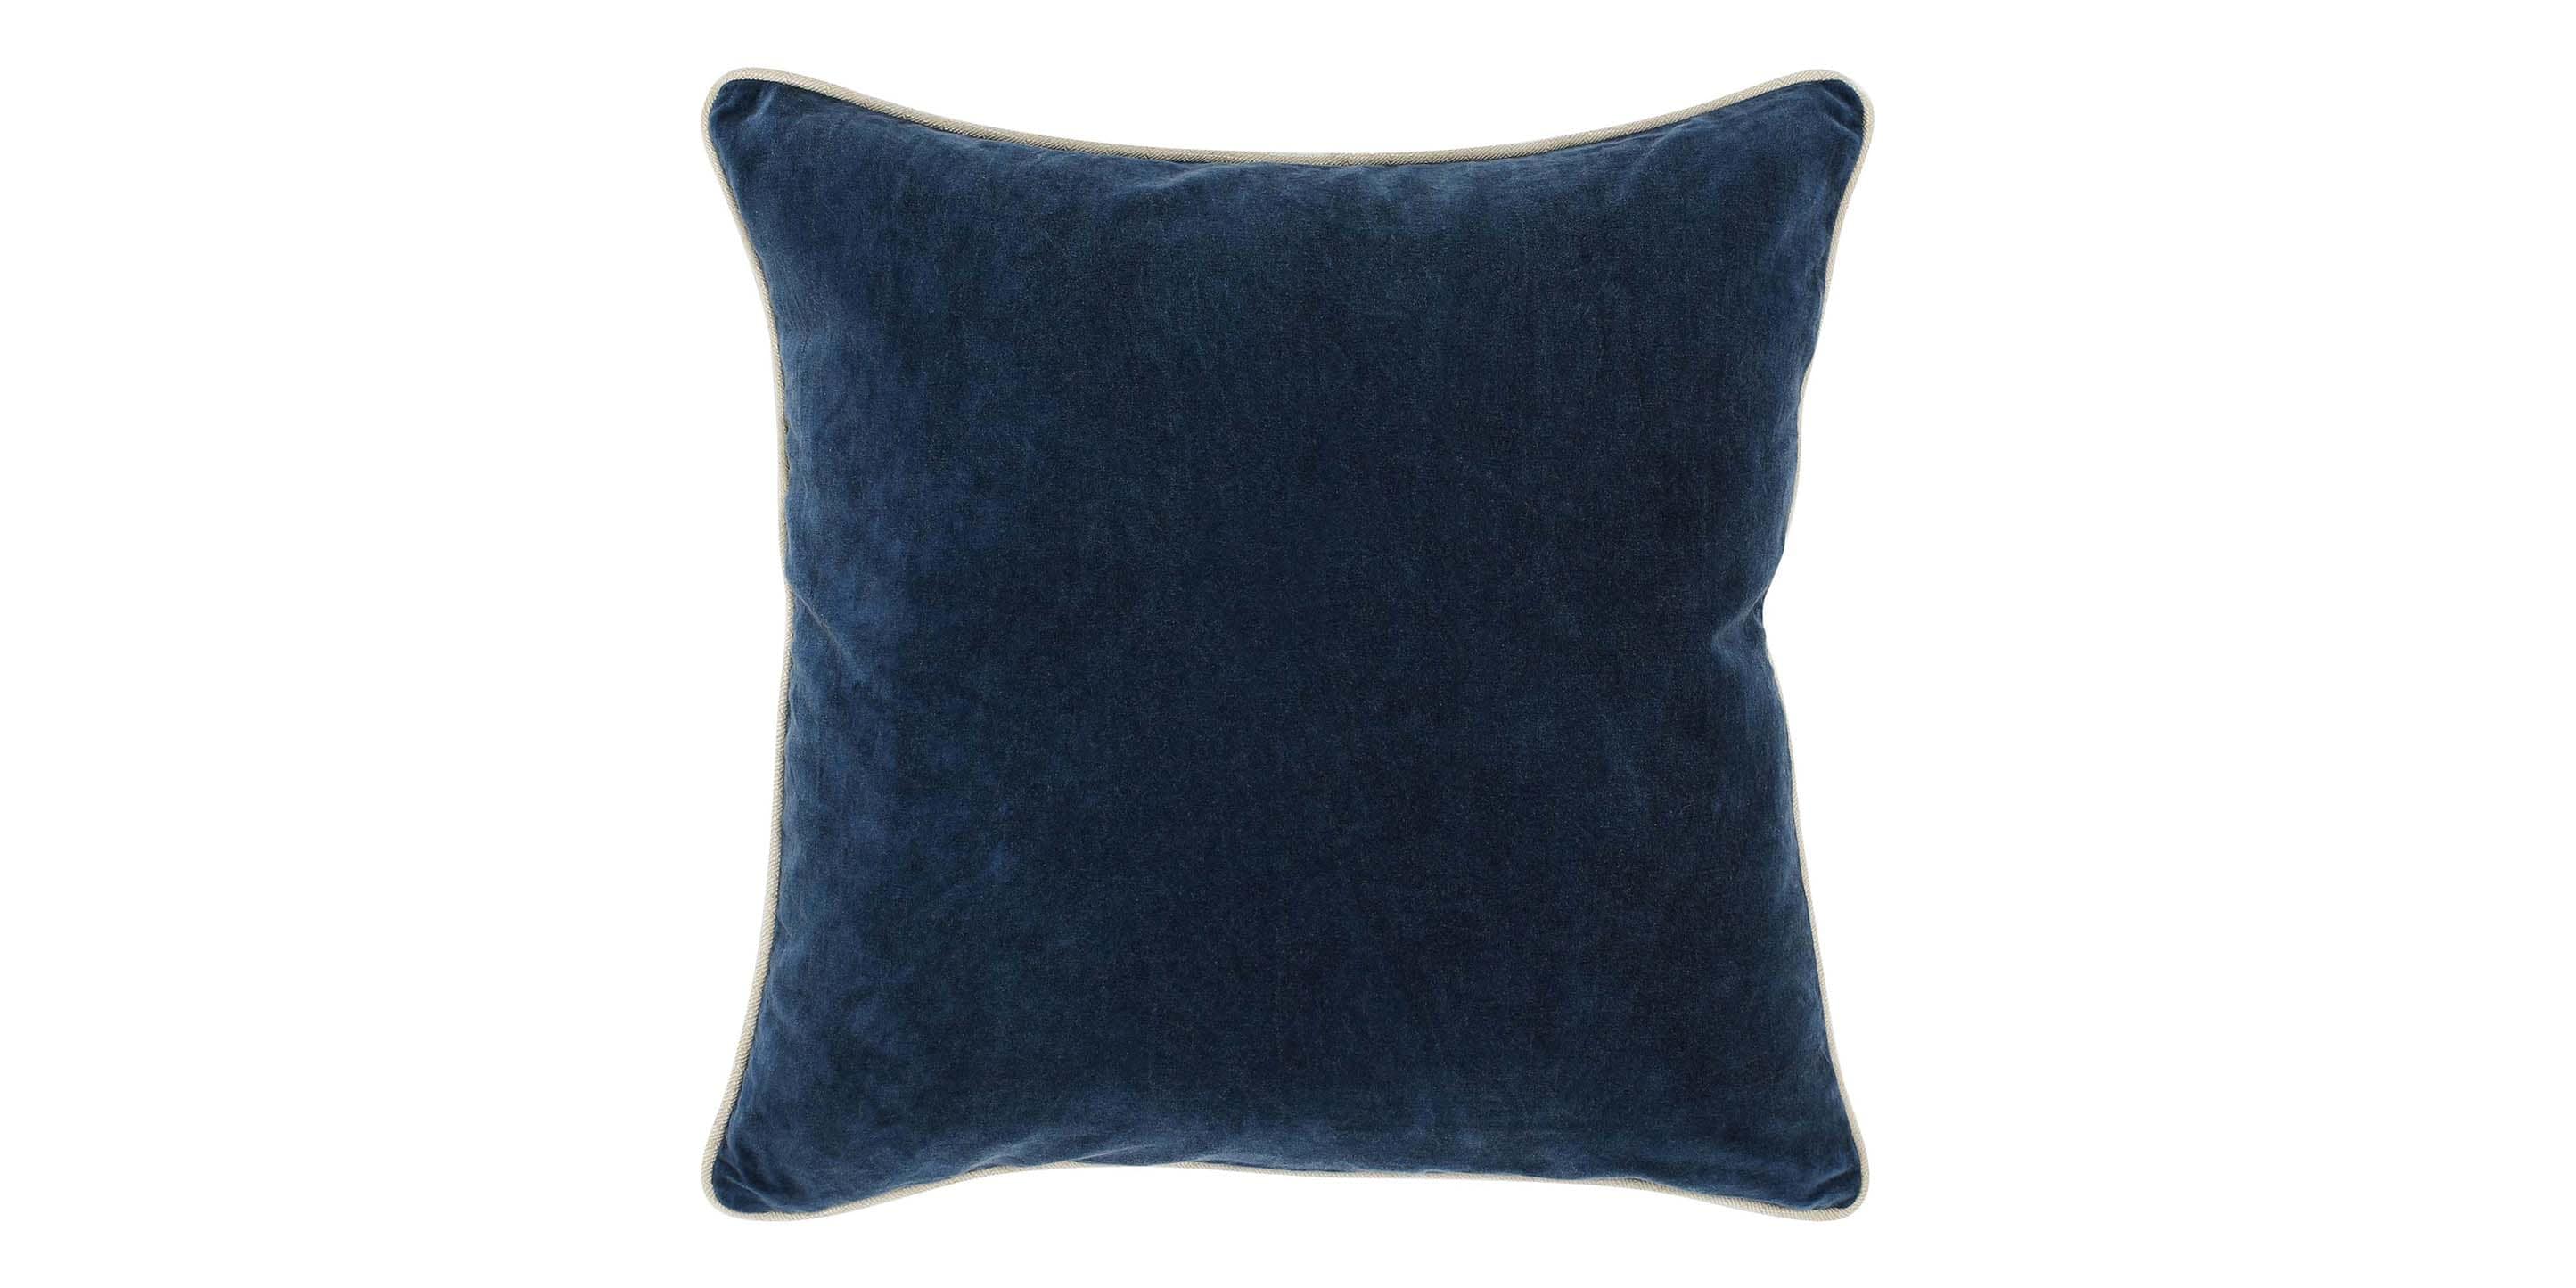 Heirloom Velvet Navy Pillow Cover